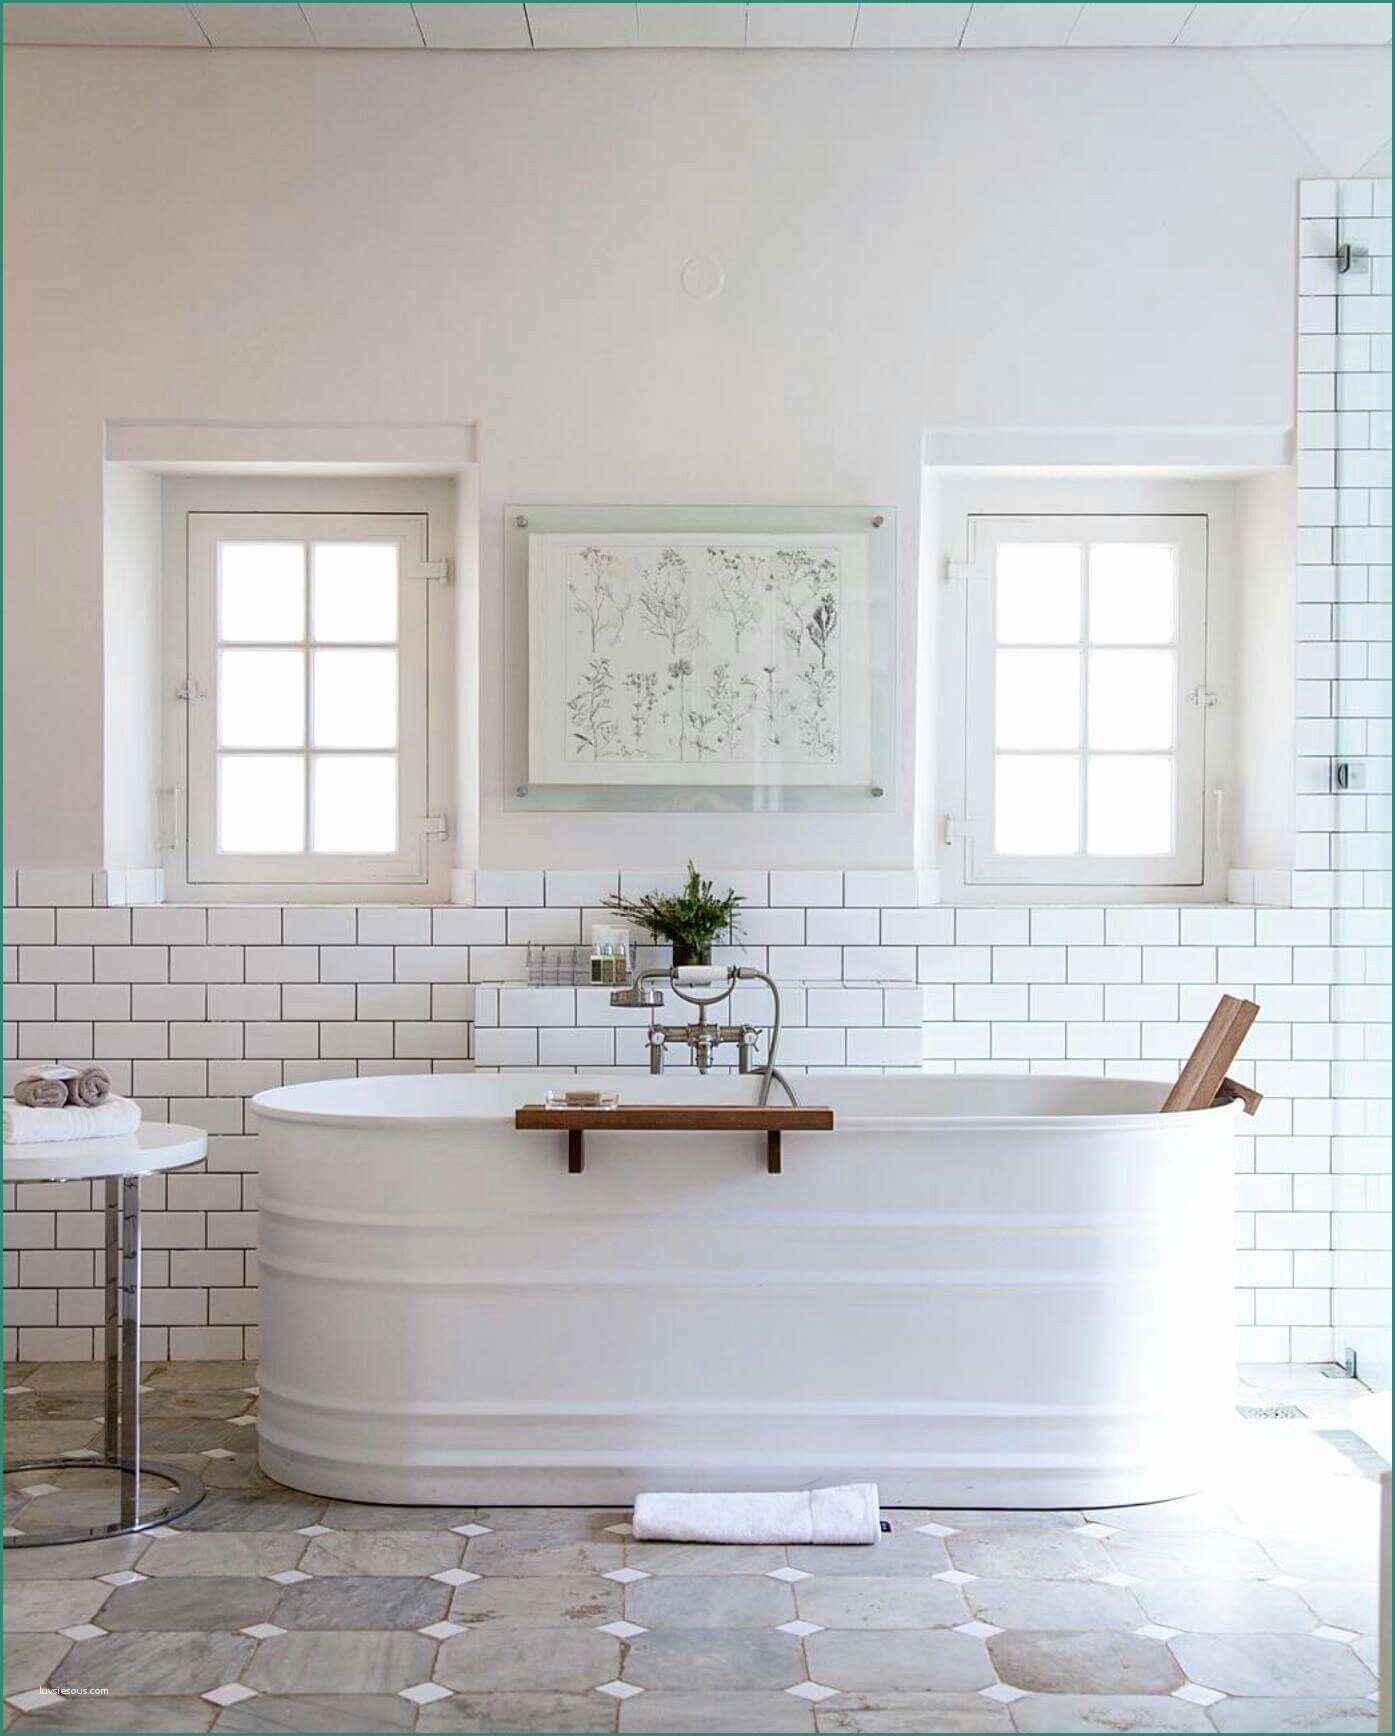 Divano Angolare Piccolo E Amazing Bath Bathrooms Pinterest